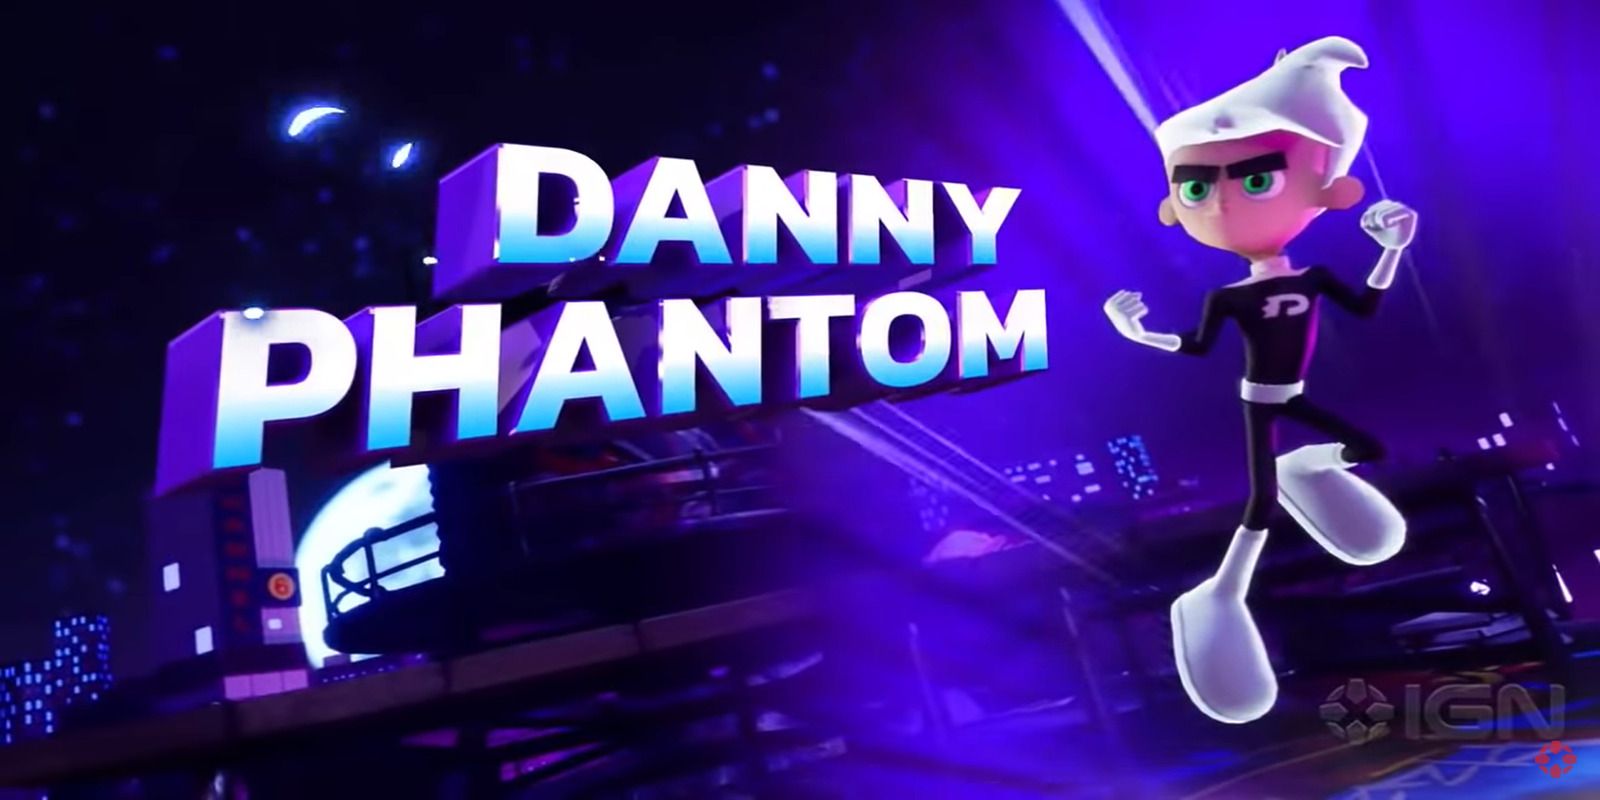 Danny phantom posing next to name